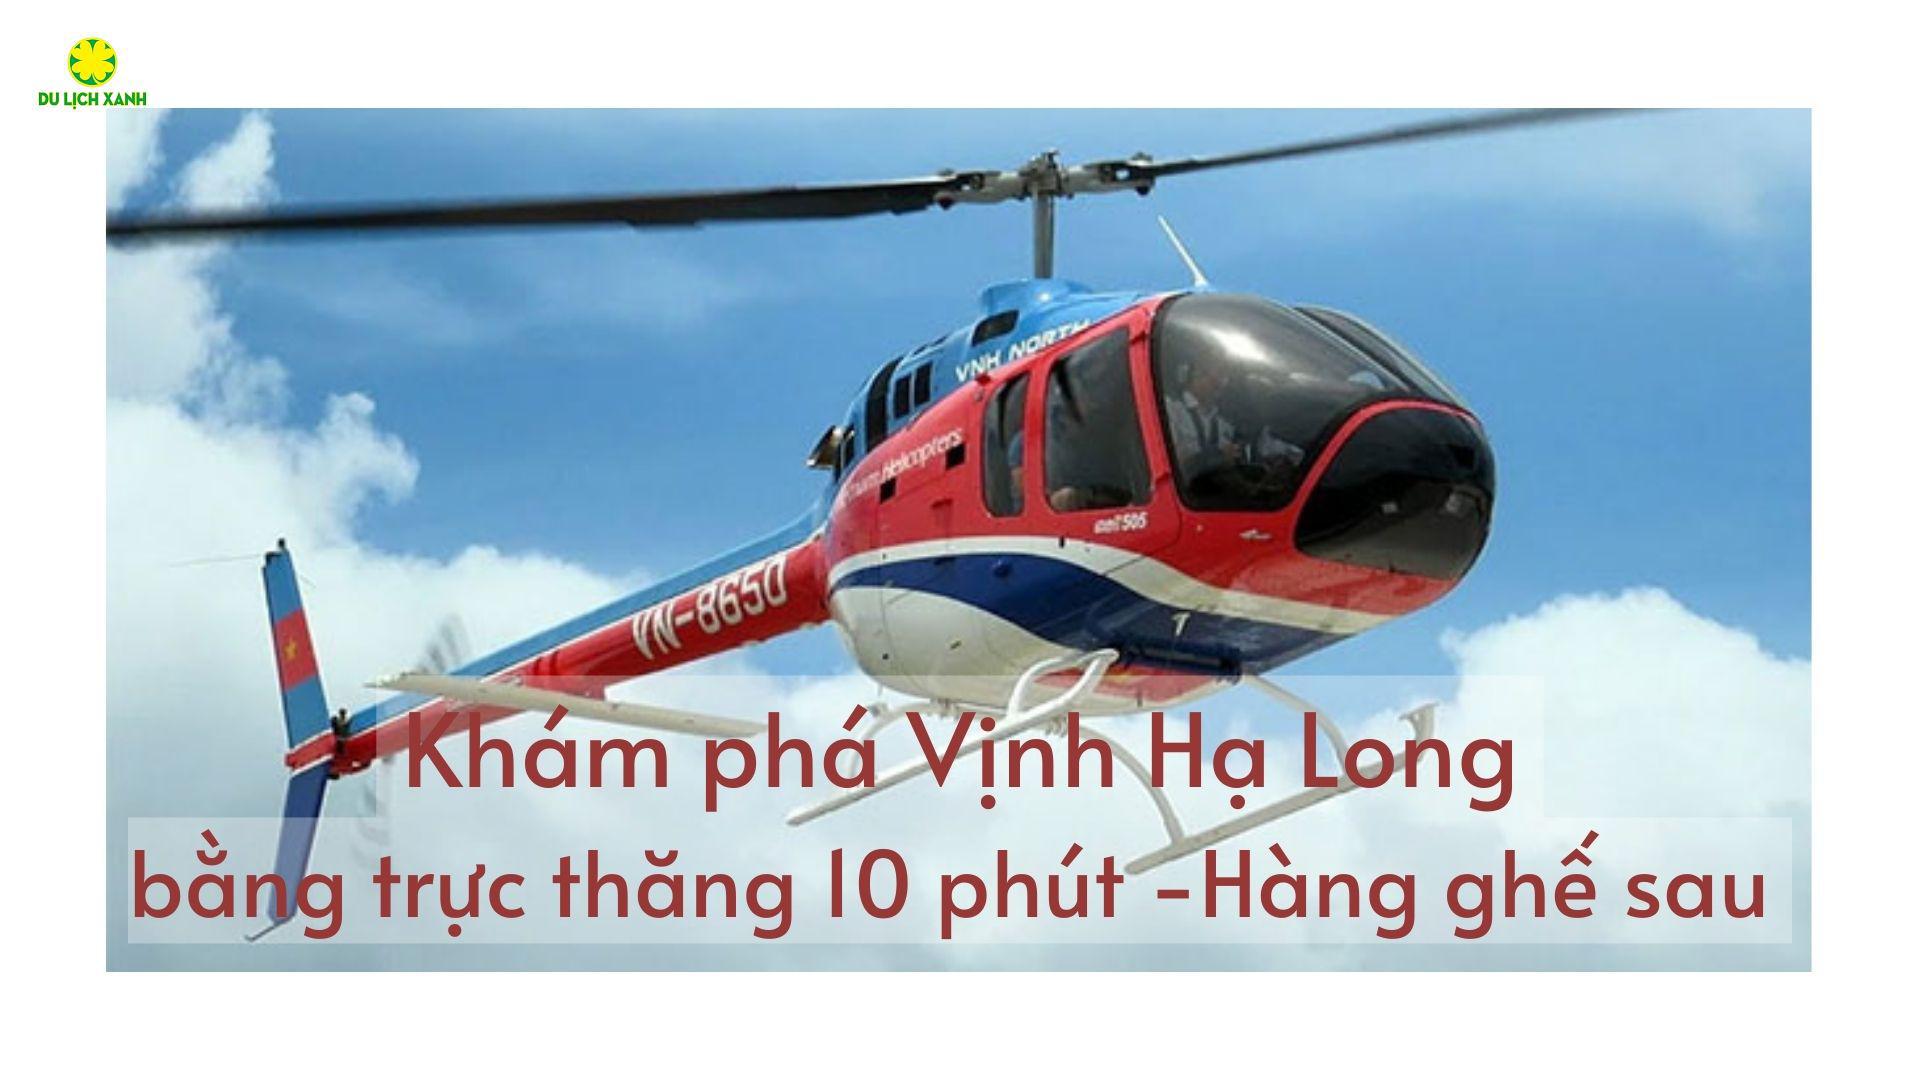 Khám phá Vịnh Hạ Long bằng trực thăng 10 phút | Hàng ghế sau 